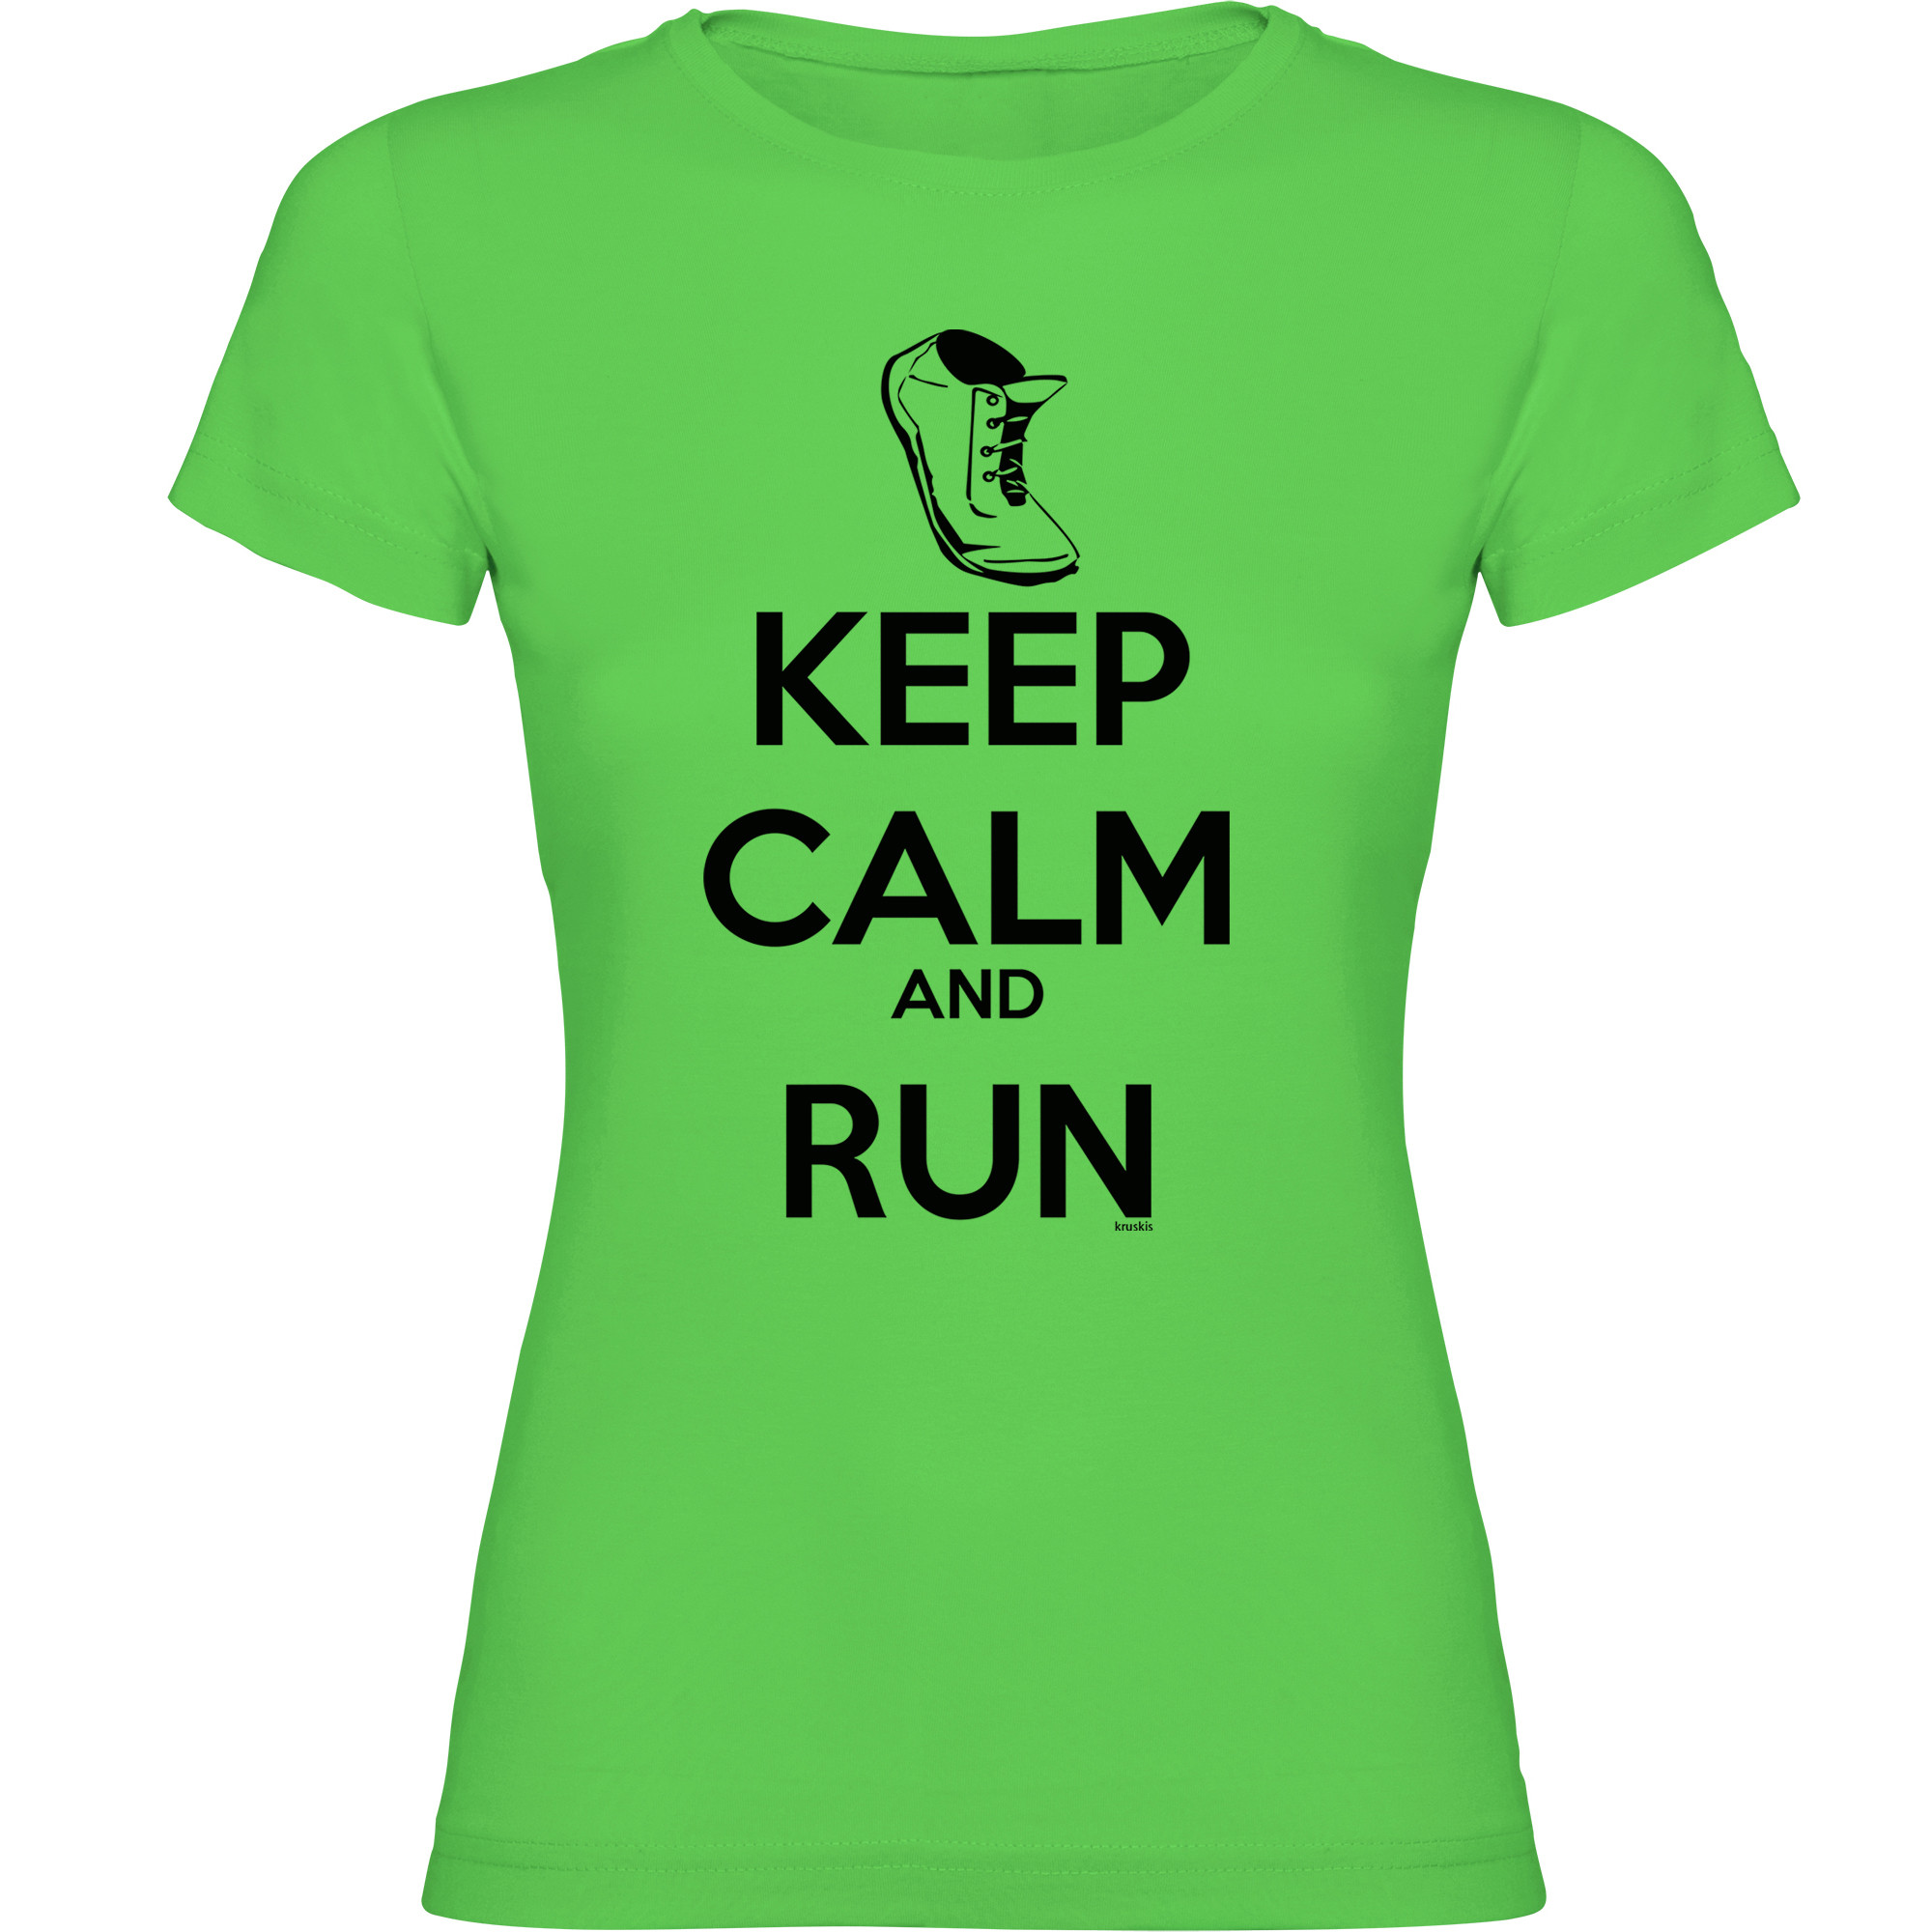 Camiseta Running Keep Calm and Run Manga Corta Mujer